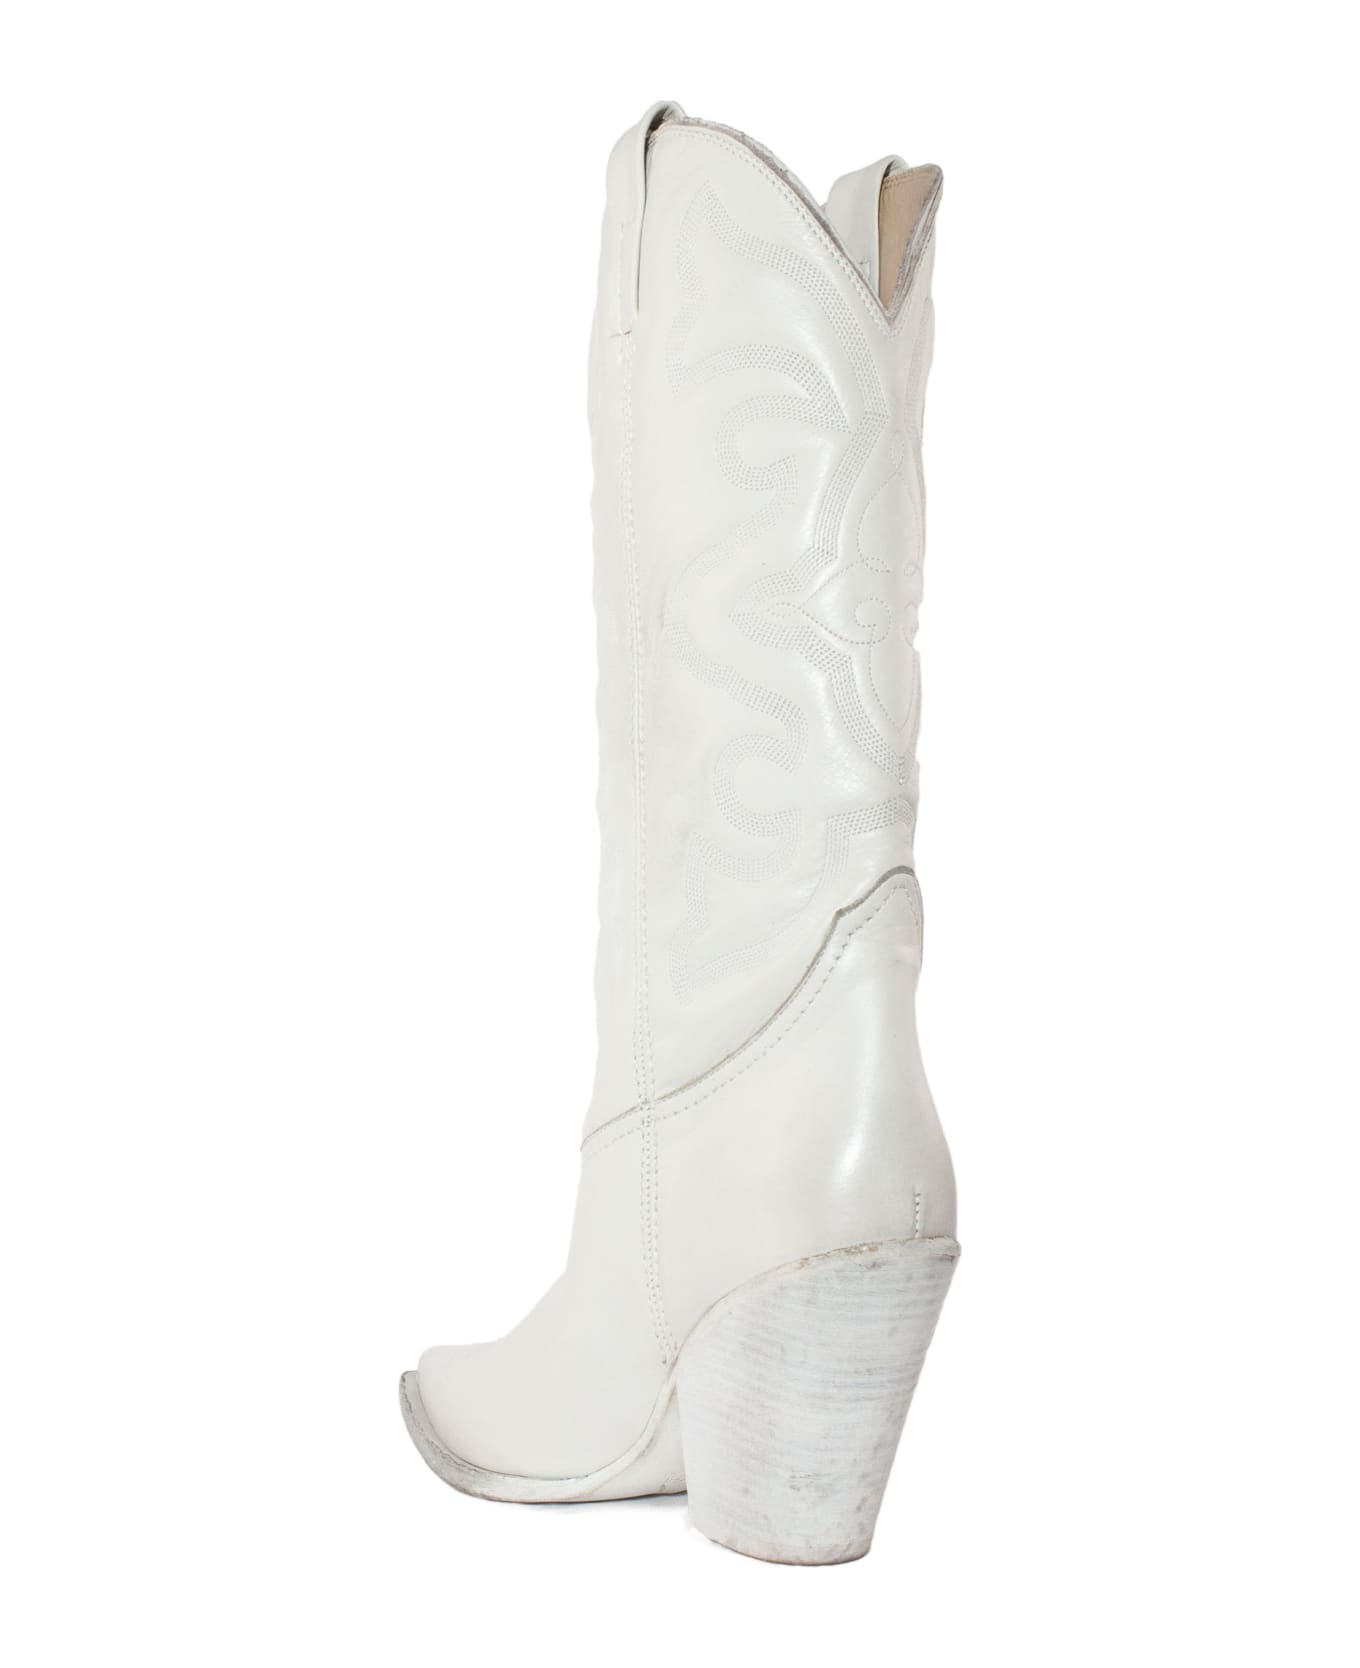 Elena Iachi White Leather Texan Boot - Bianco